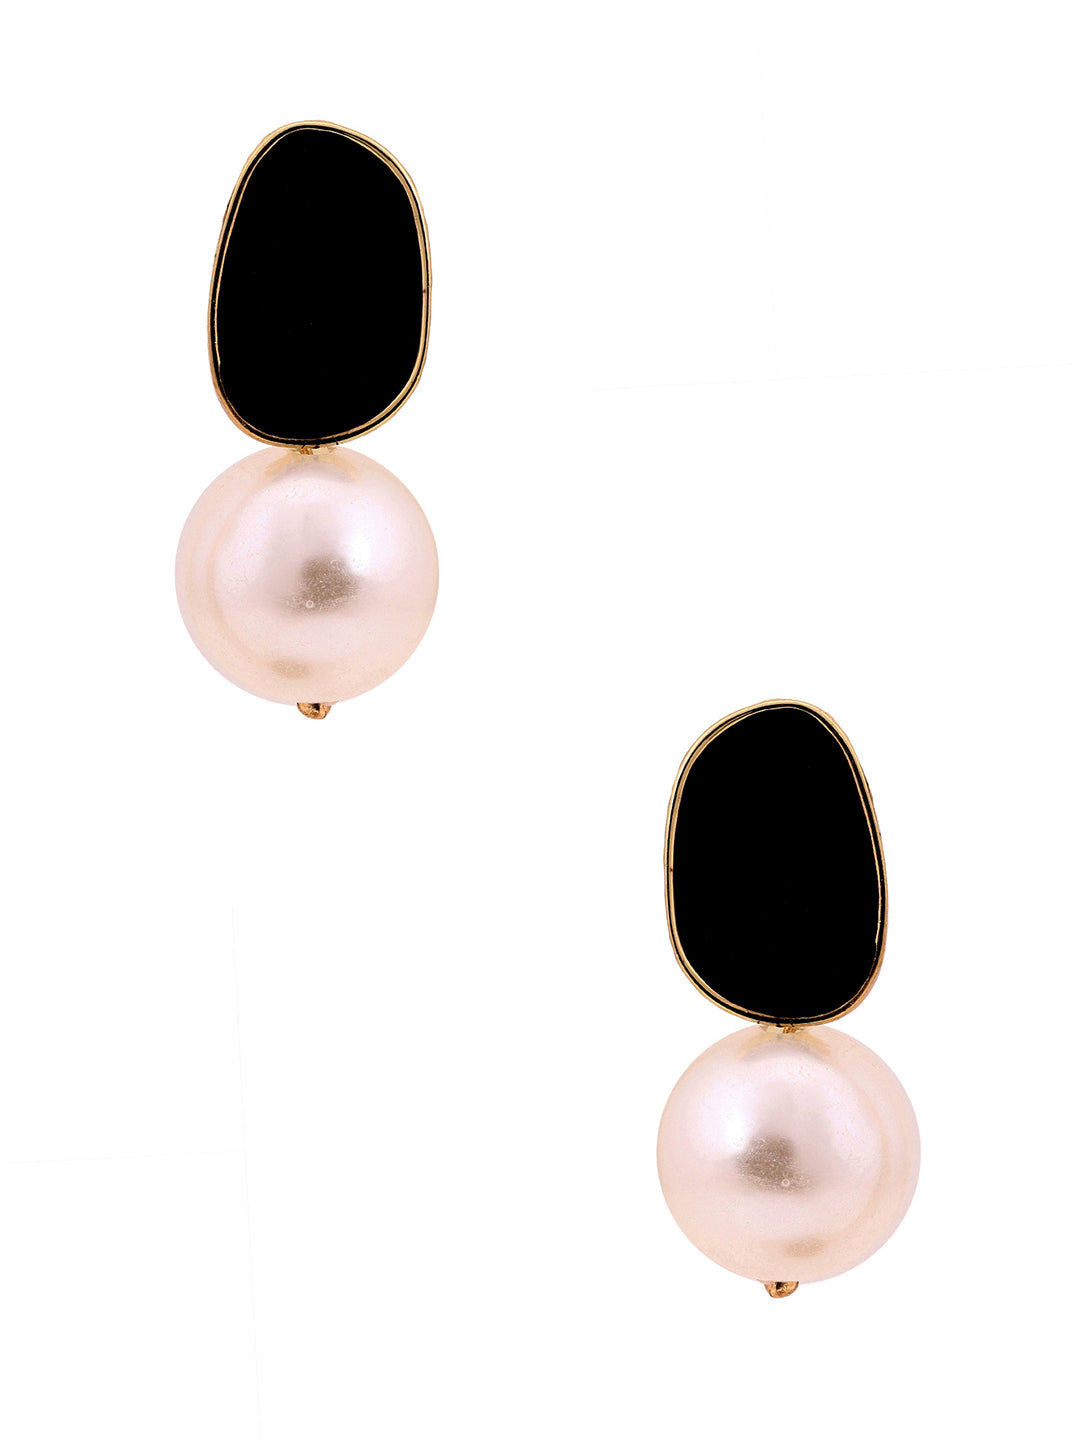 Priyaasi Black Pearl Drop Gold Plated Earrings